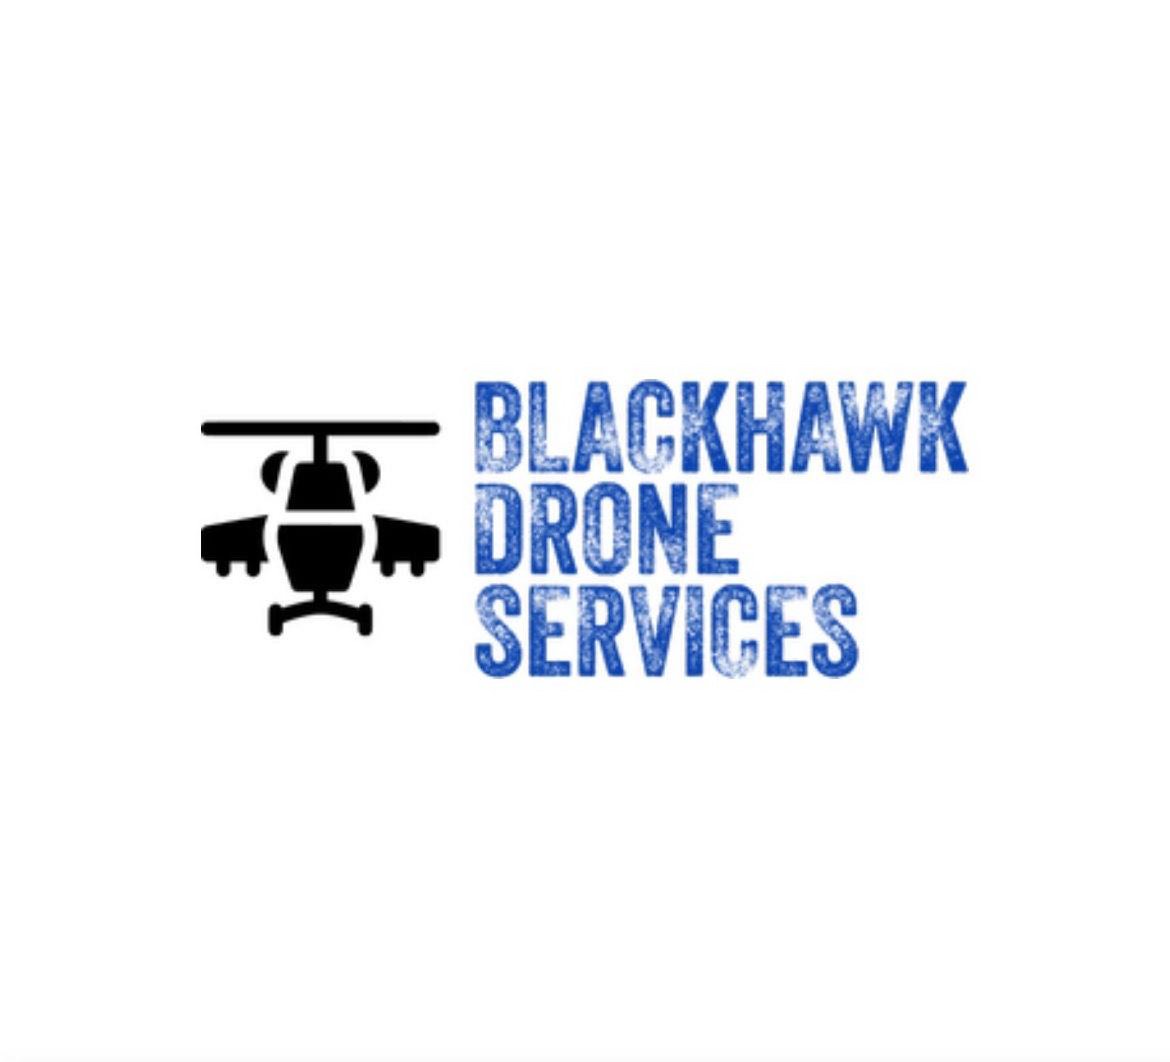  BLACKHAWK DRONE SERVICES